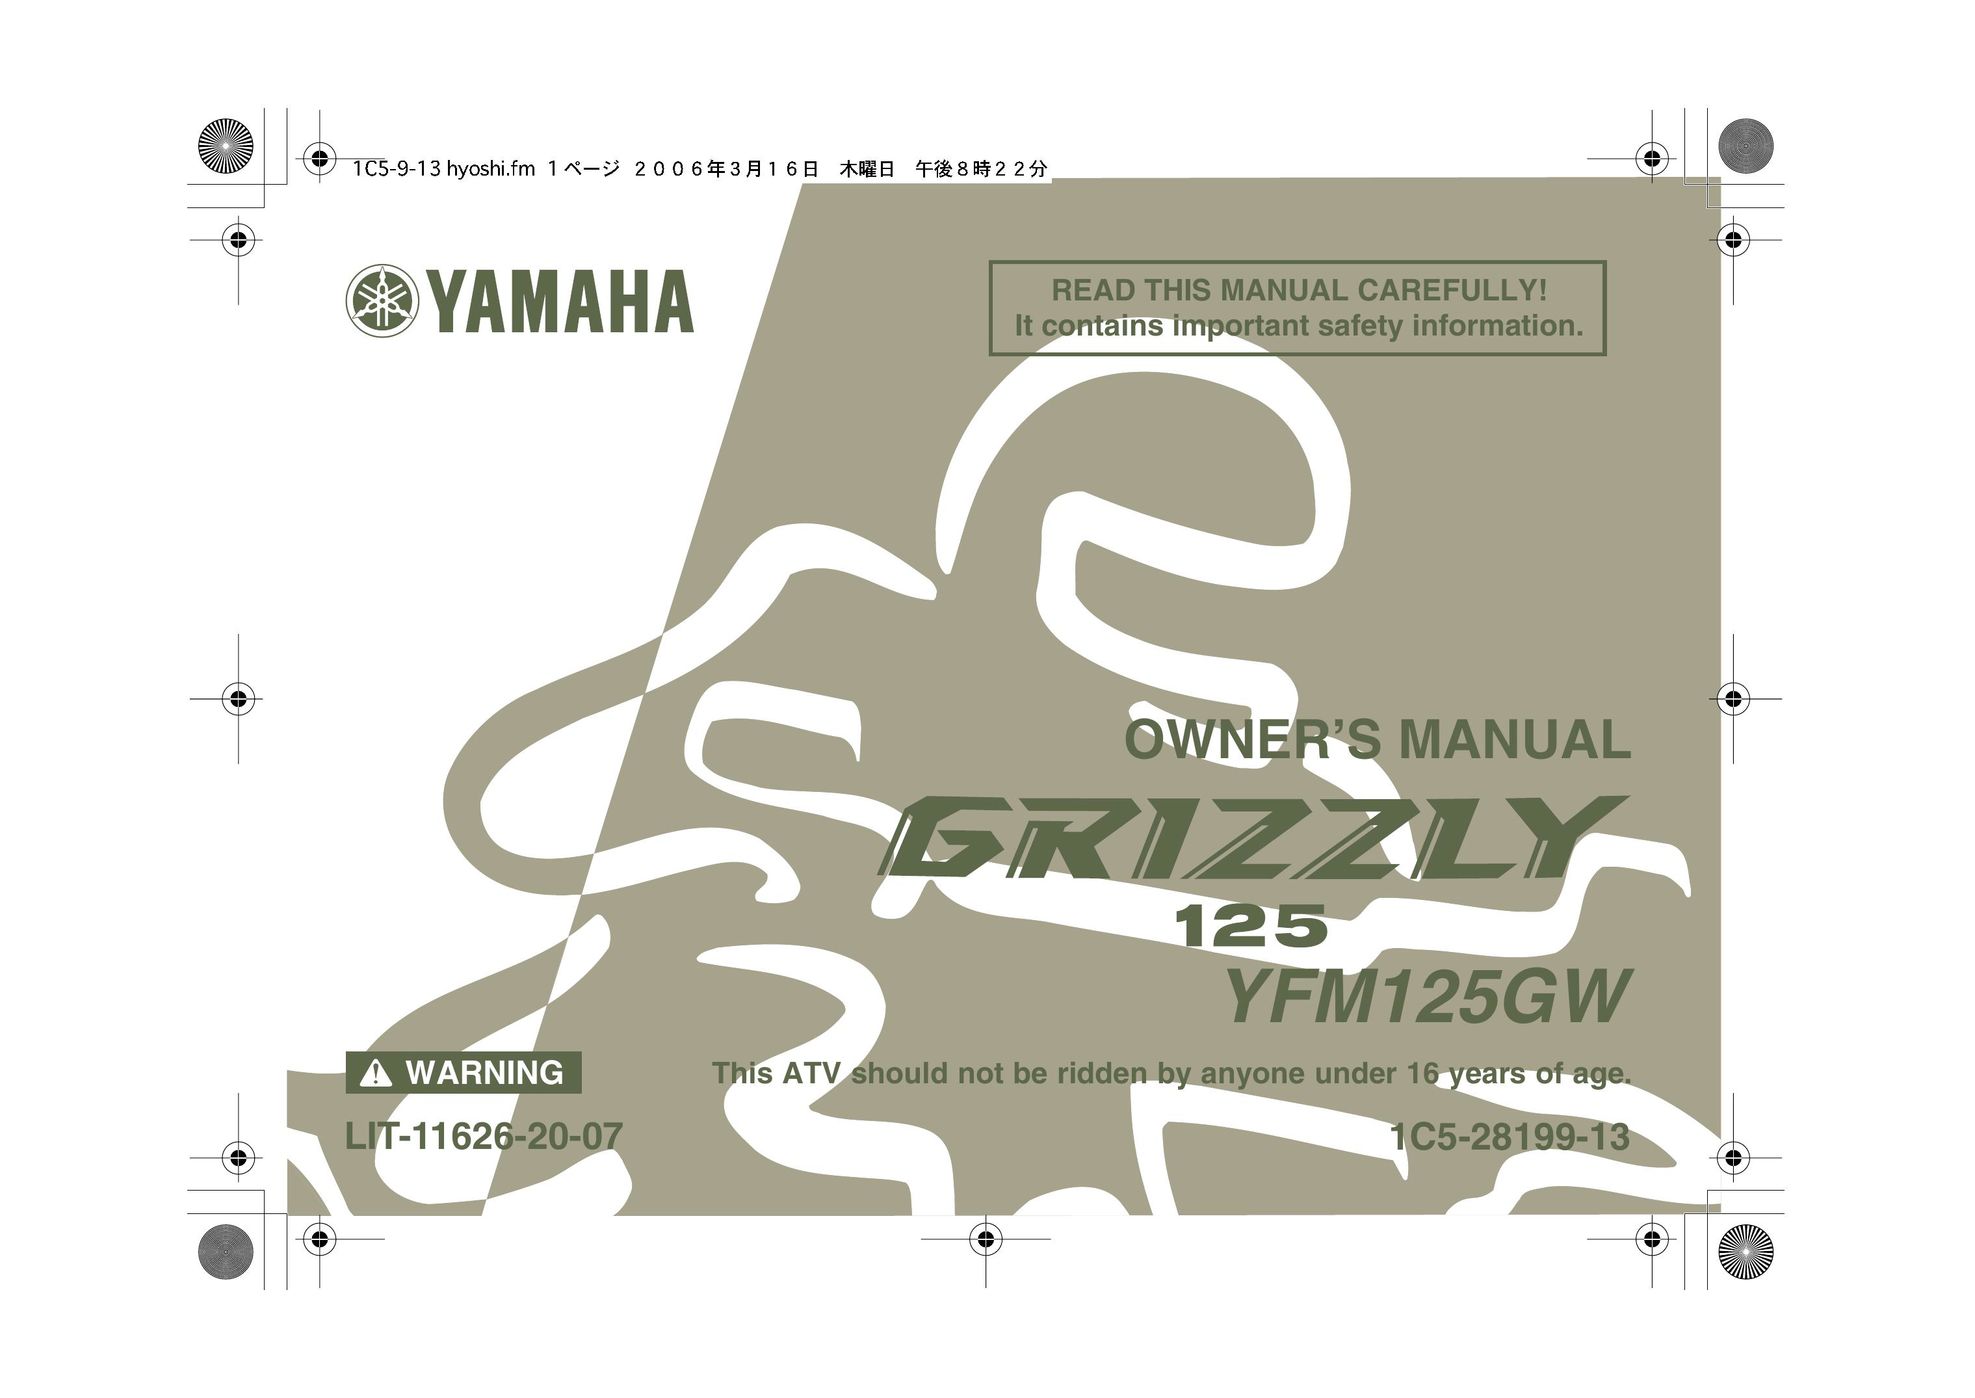 Yamaha YFM125GW Car Stereo System User Manual